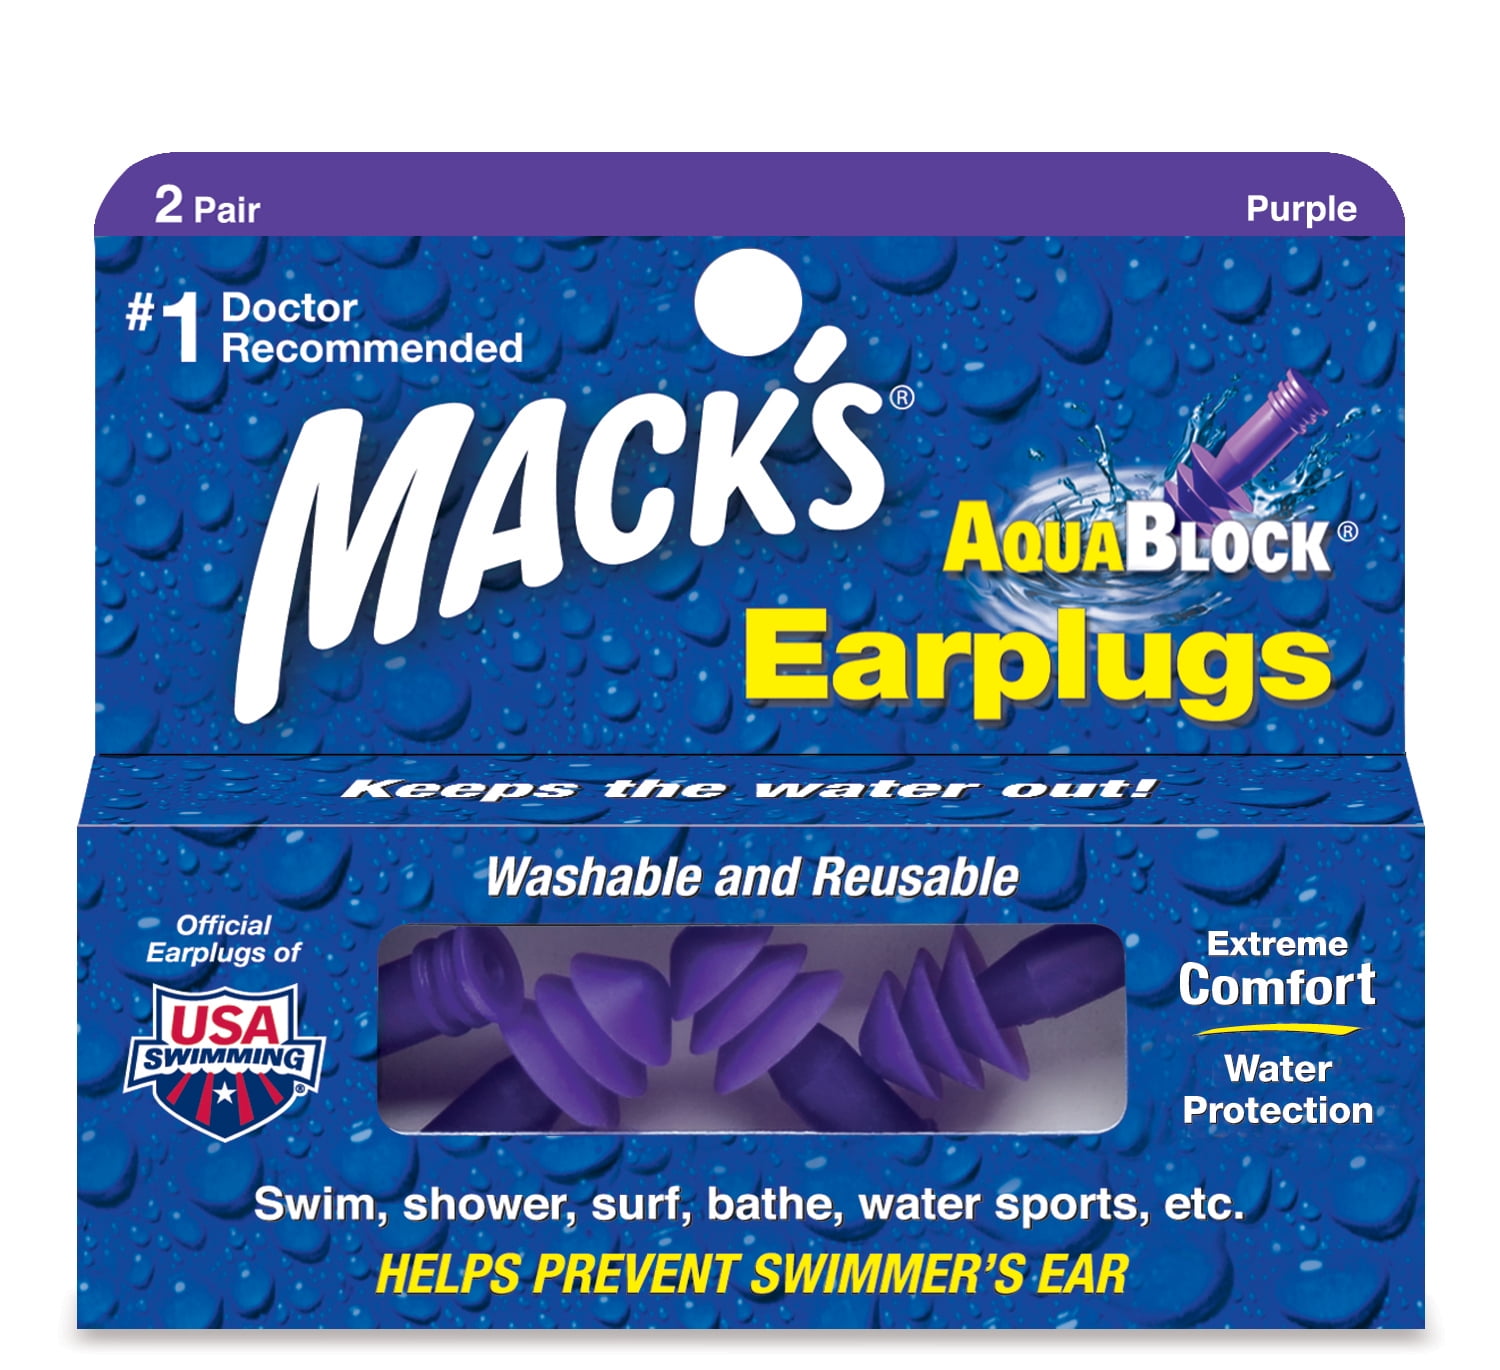 2 Pair 3 Pack Ear Plugs for Water Mack's AquaBlock Earplugs Waterproof 